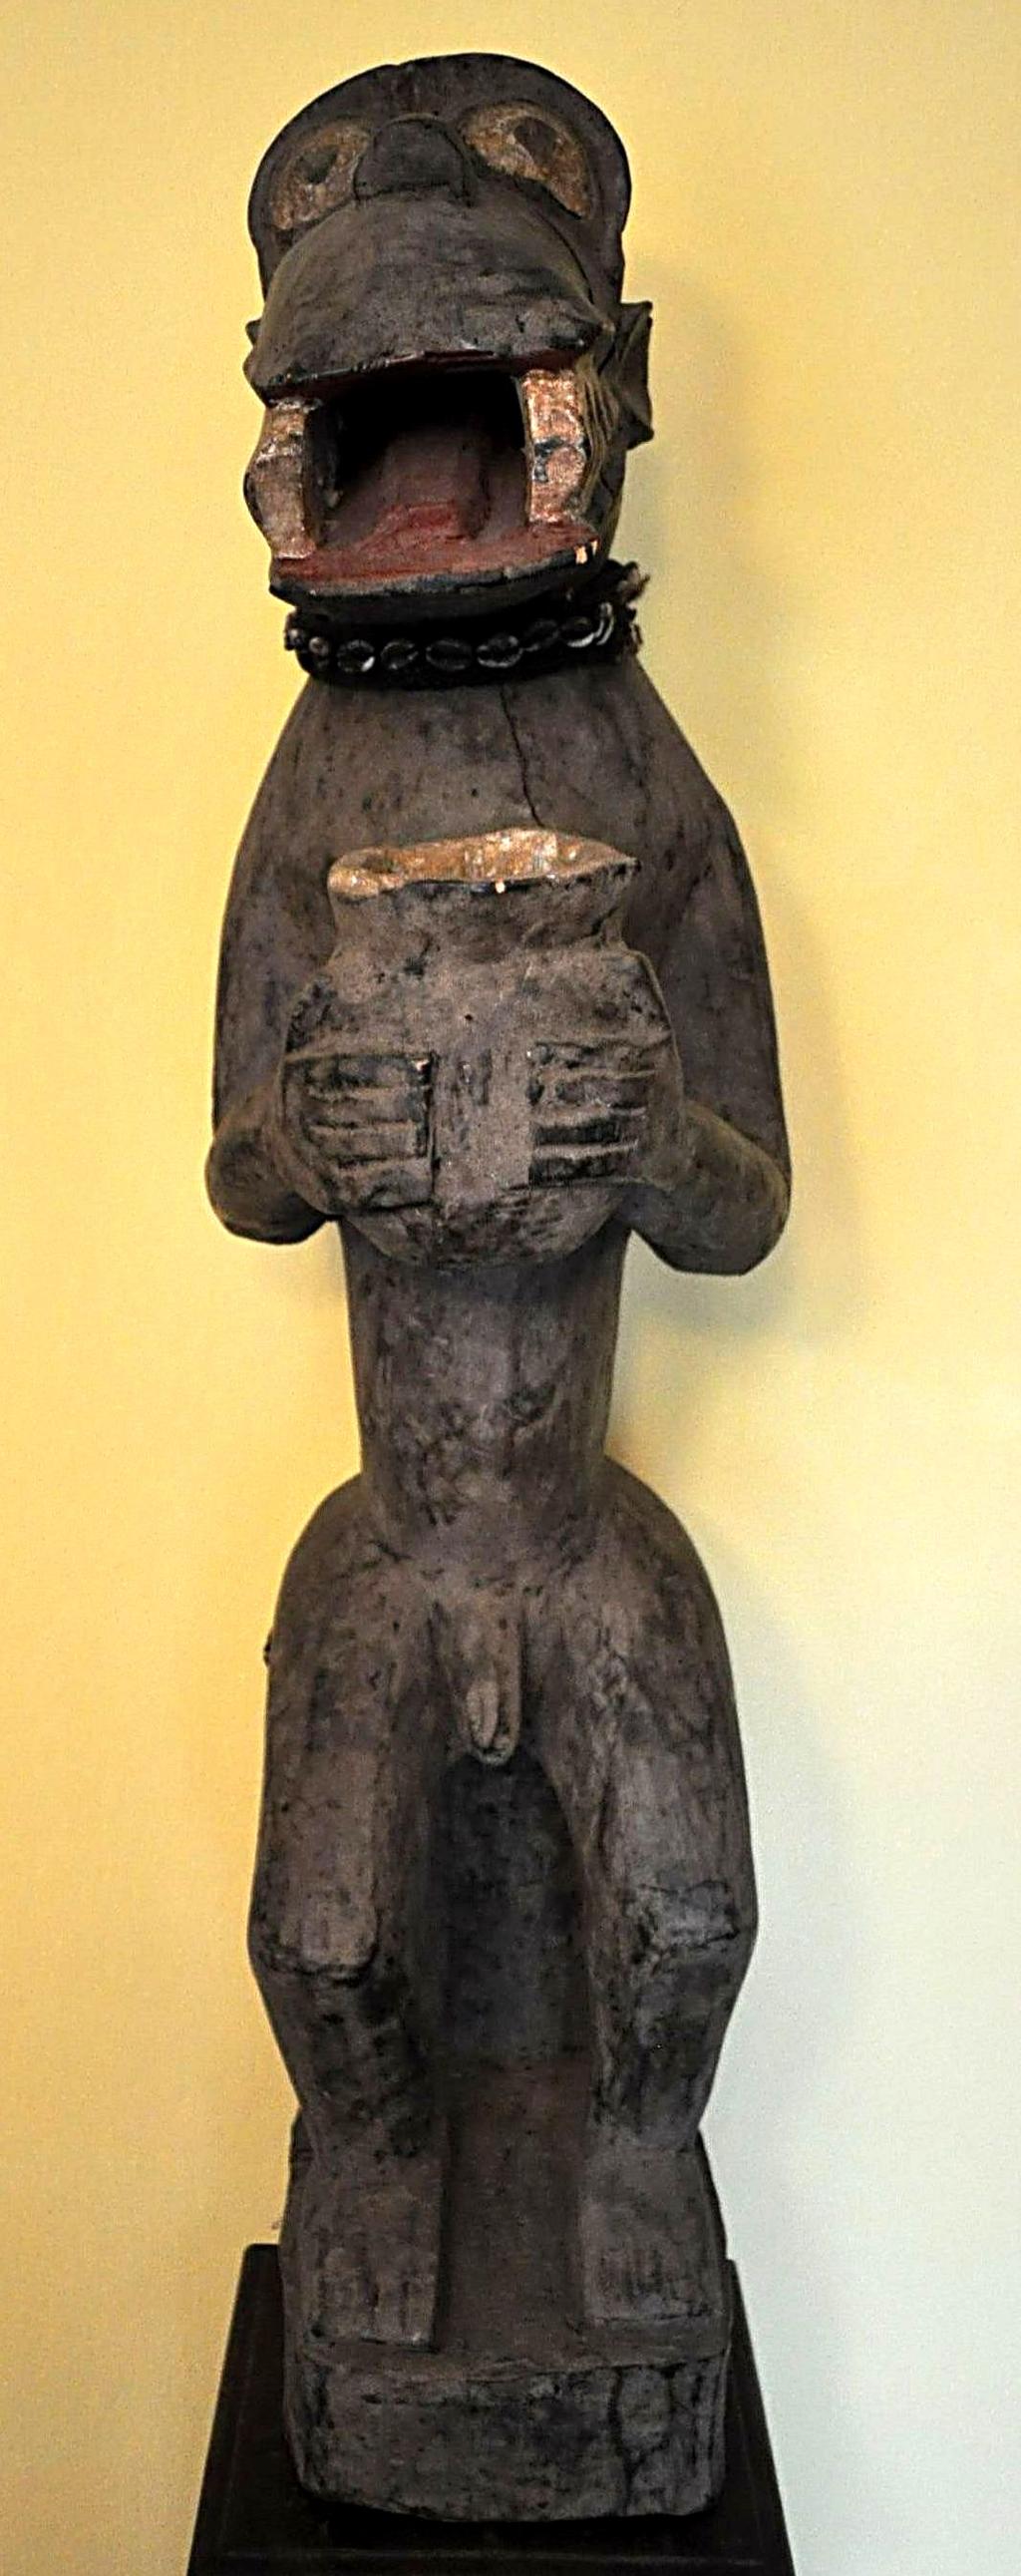 Zdjęcie po lewej Baule, figura przedstawia bóstwo małp Gbere, które było odpowiedzialne za karanie dusz w zaświatach.